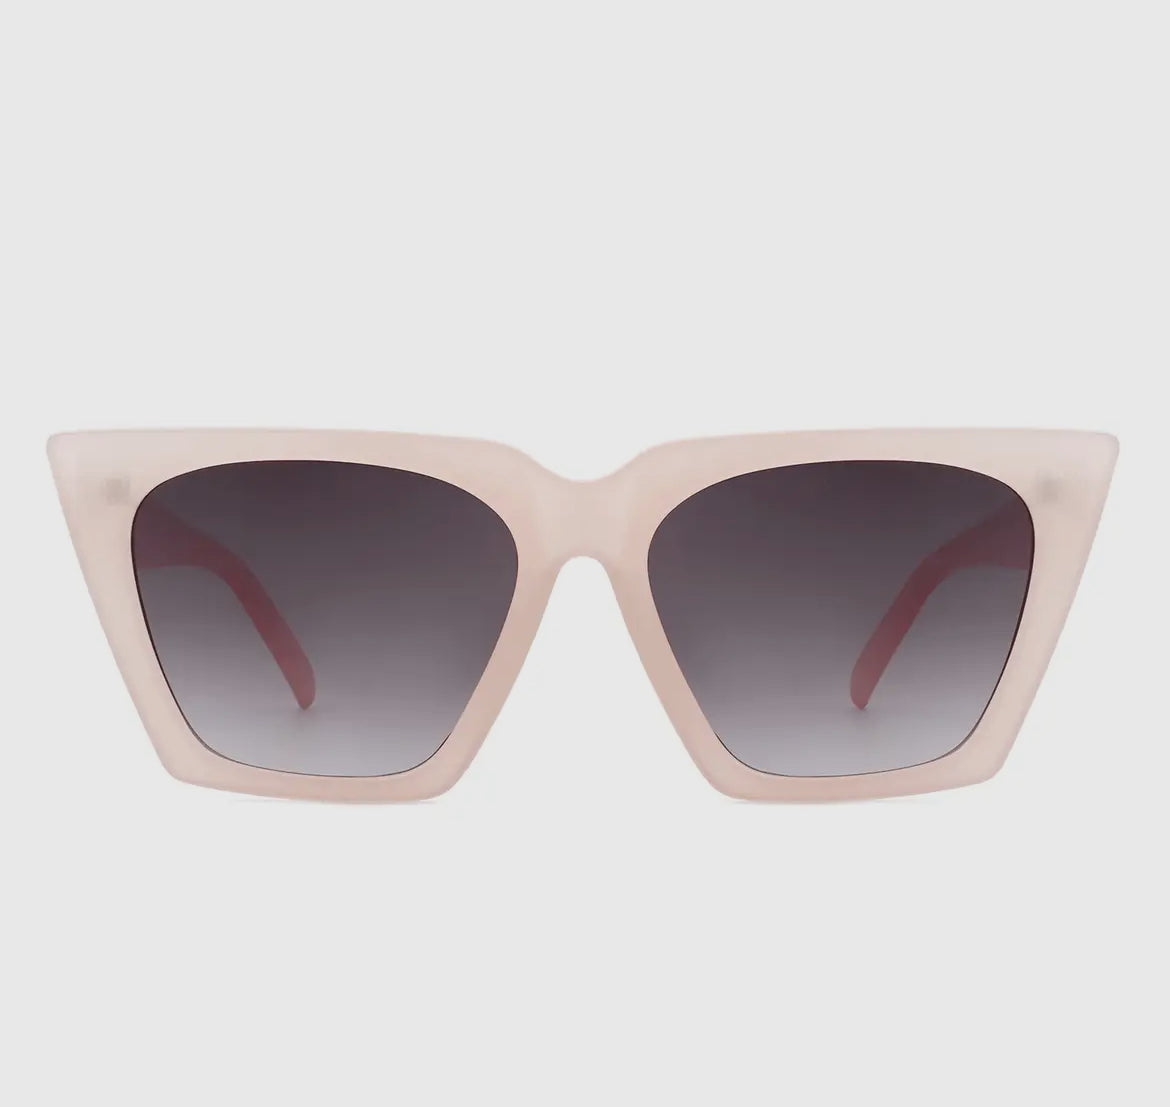 Retro Square Cat Eye Sunglasses - Premium variation from Tooksie - Just $18.99! Shop now at Tooksie